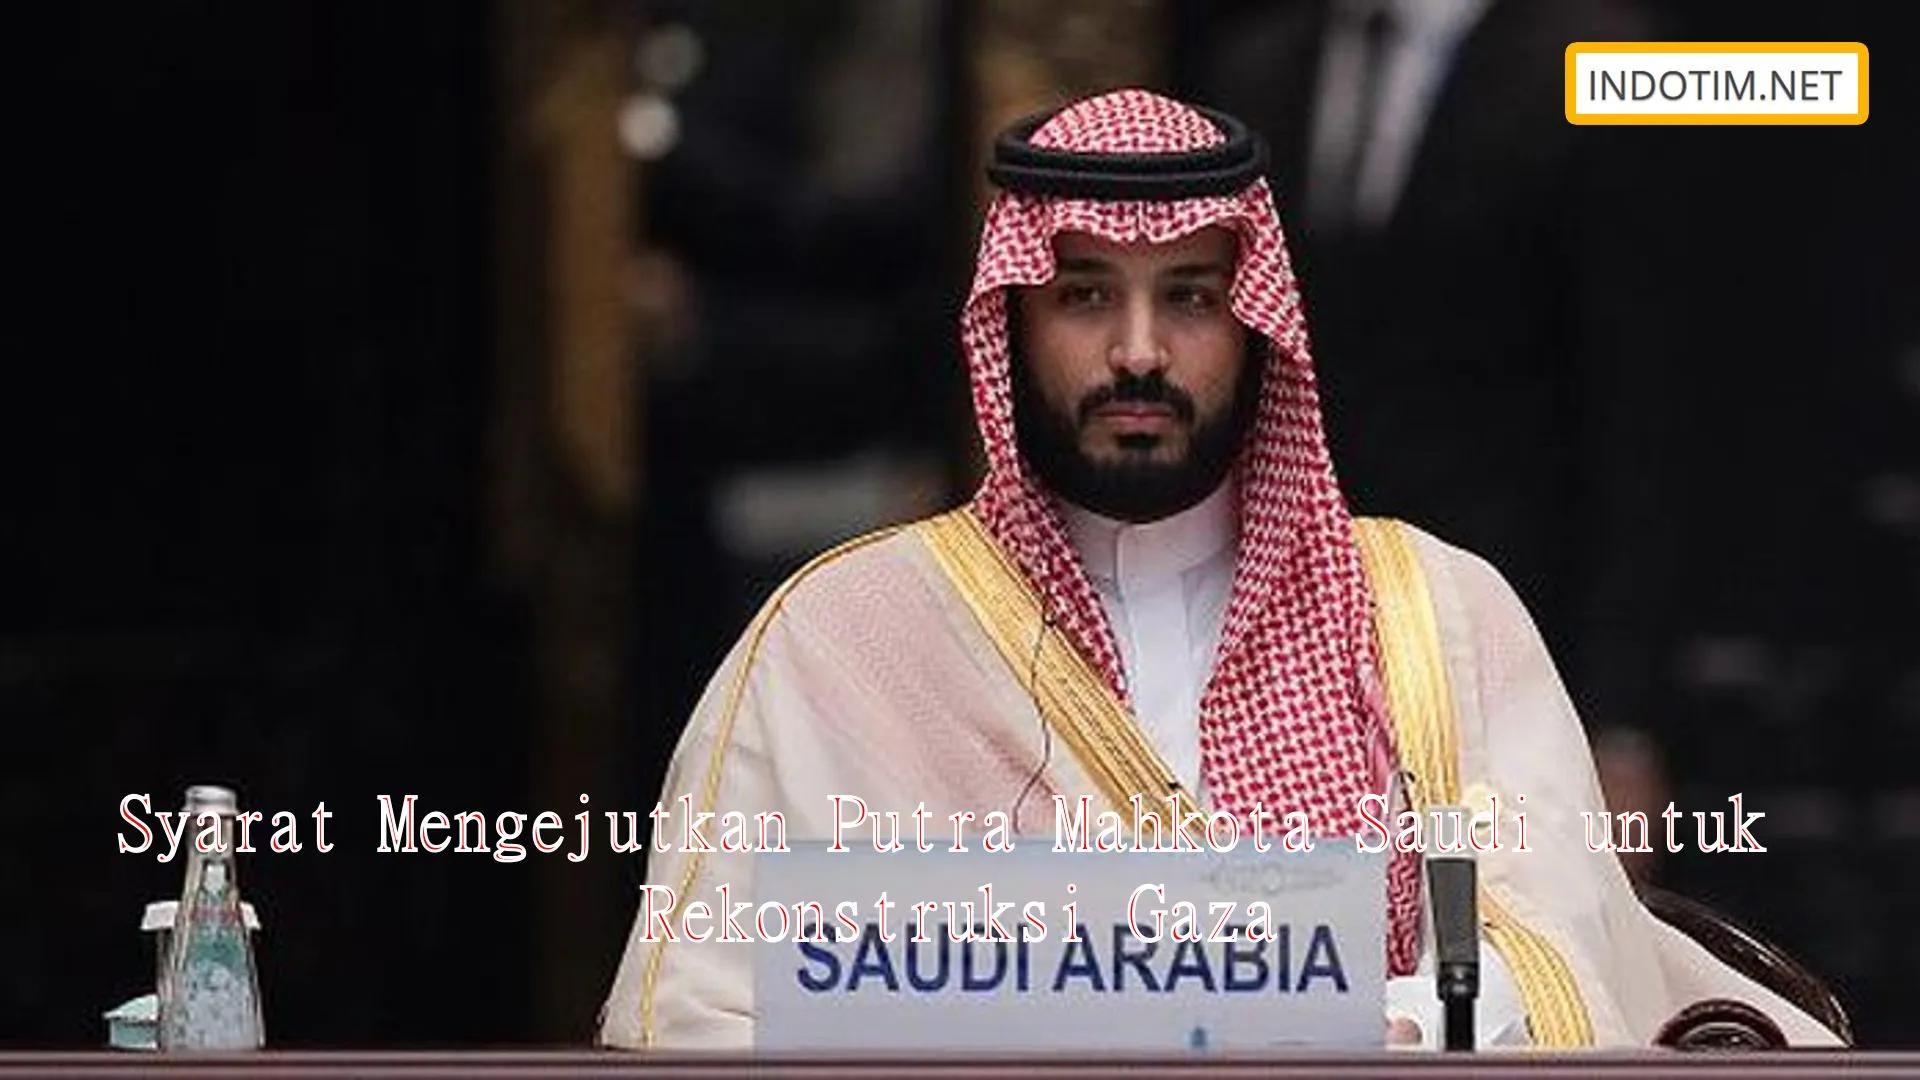 Syarat Mengejutkan Putra Mahkota Saudi untuk Rekonstruksi Gaza